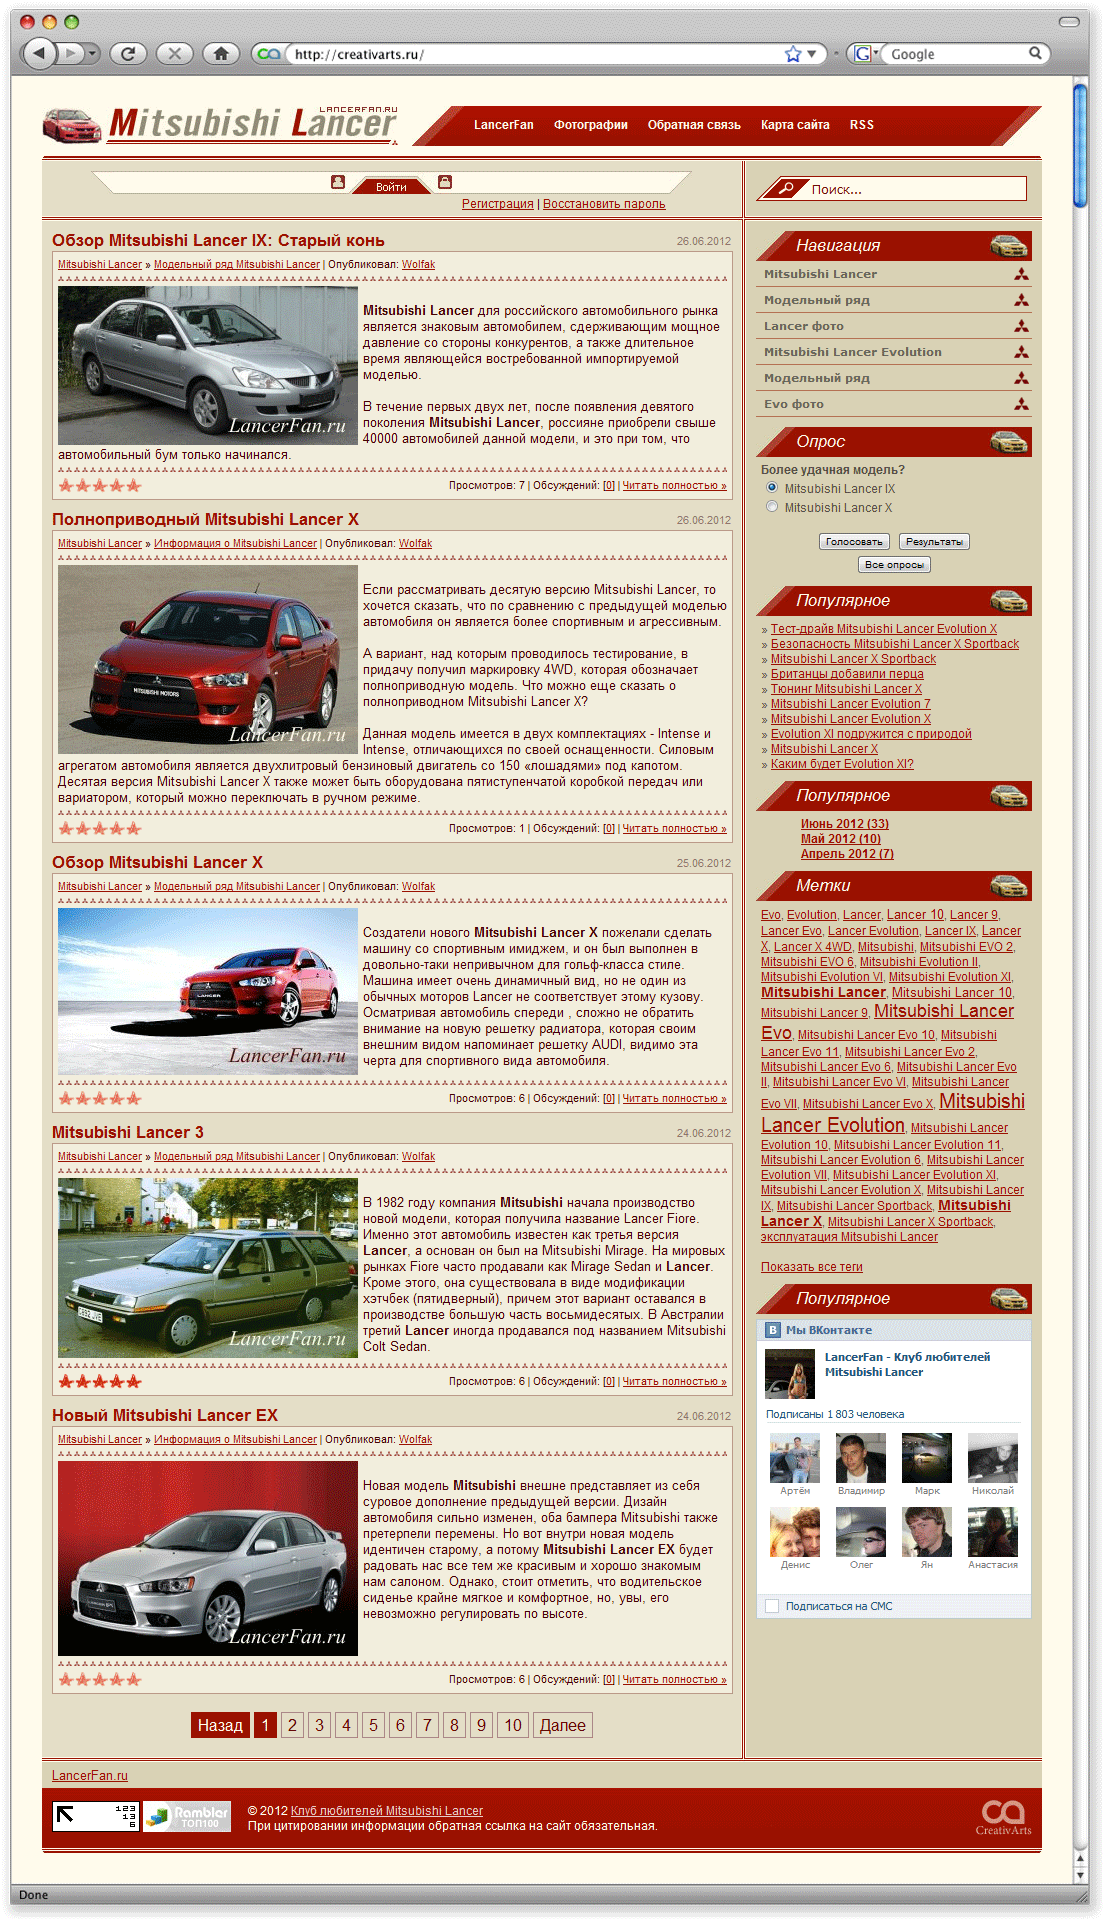 Дизайн для обновленного сайта клуба любителей Mitsubishi Lancer